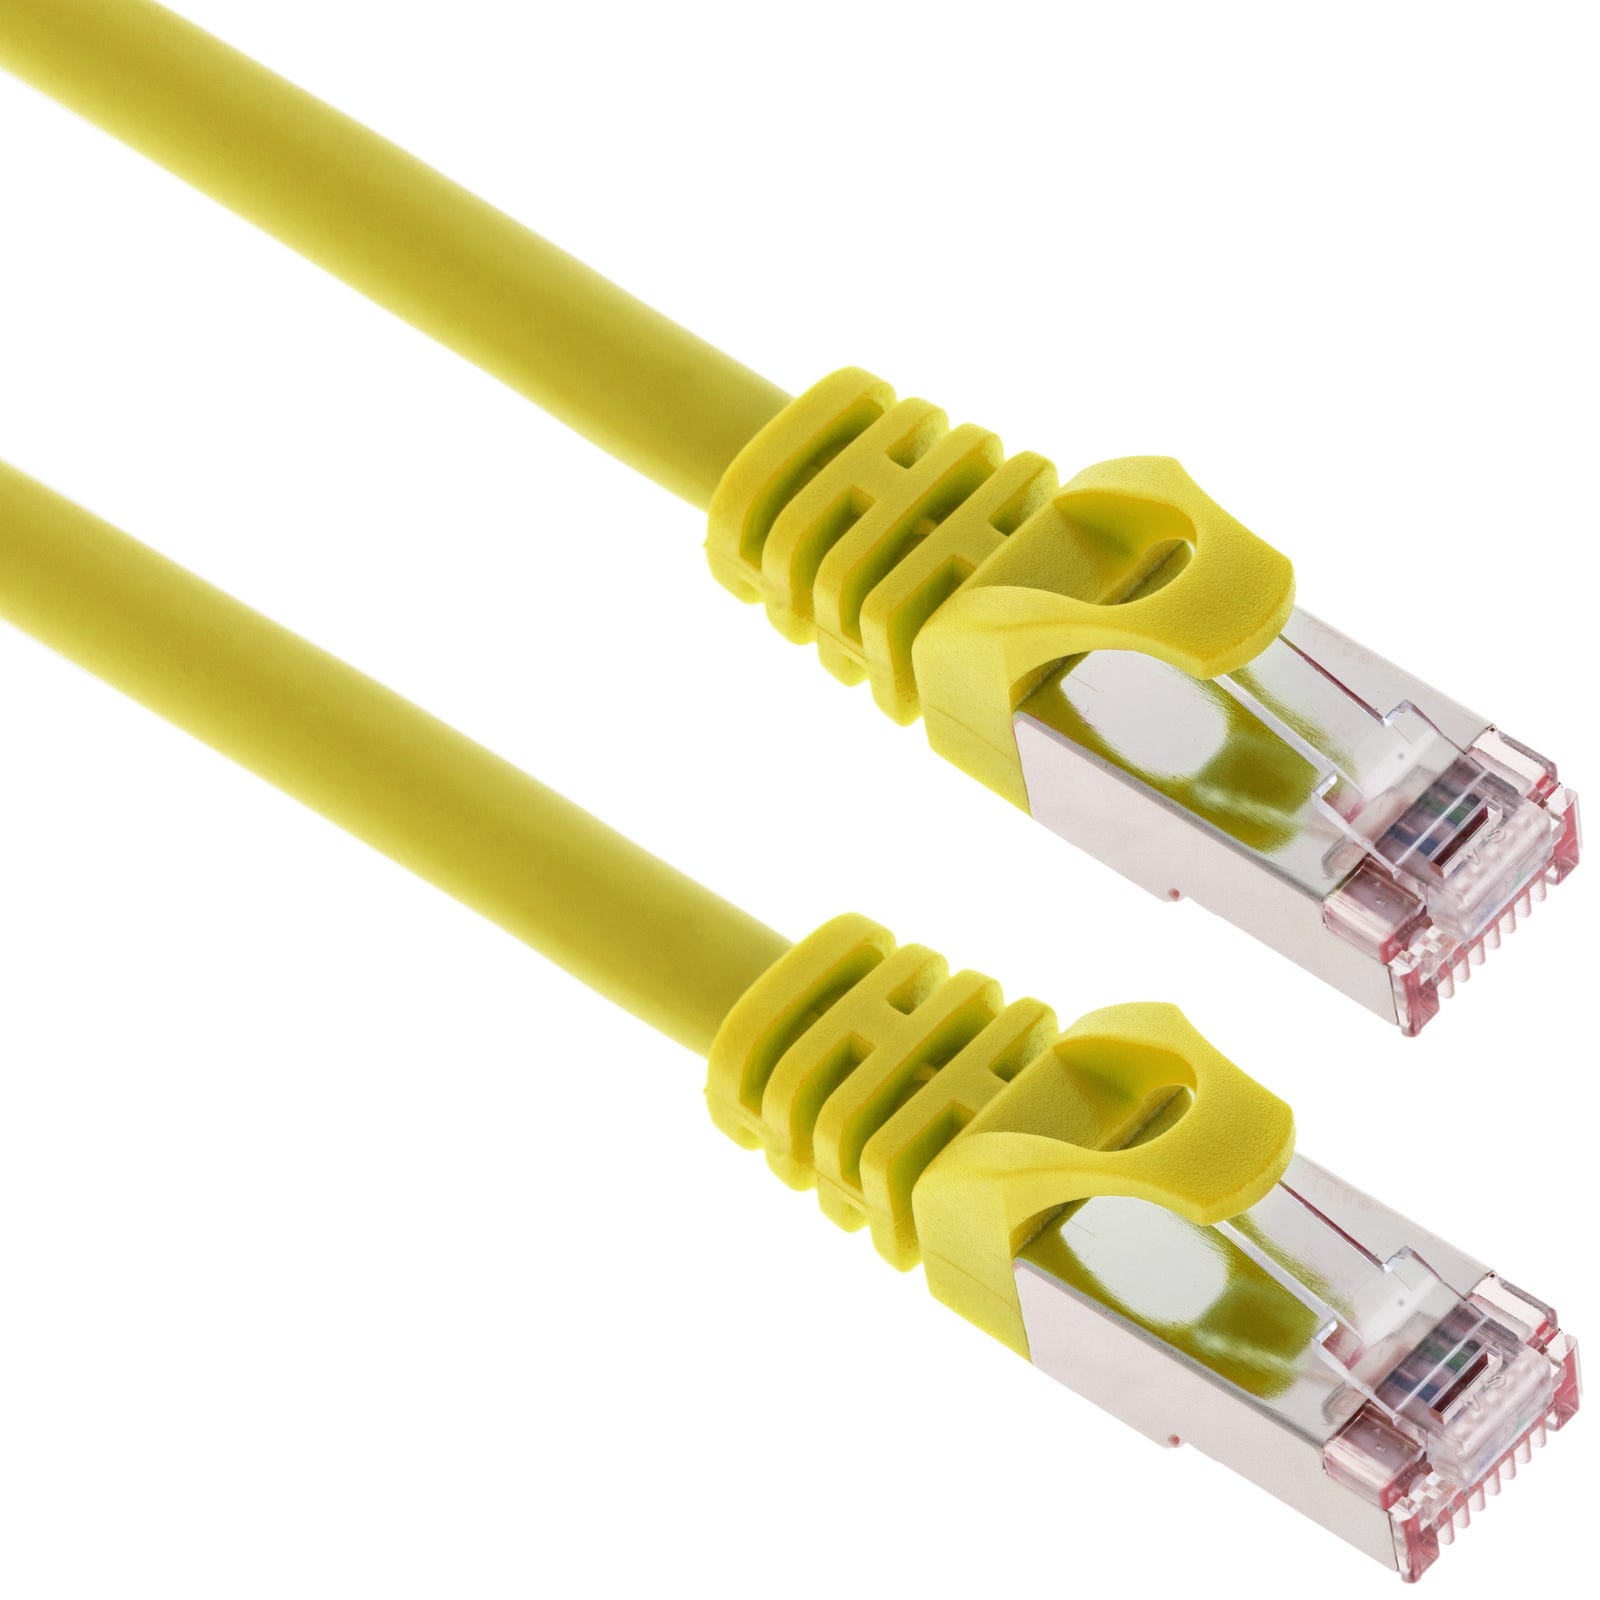 Cable de red ethernet LAN FTP RJ45 Cat.6a amarillo 2m